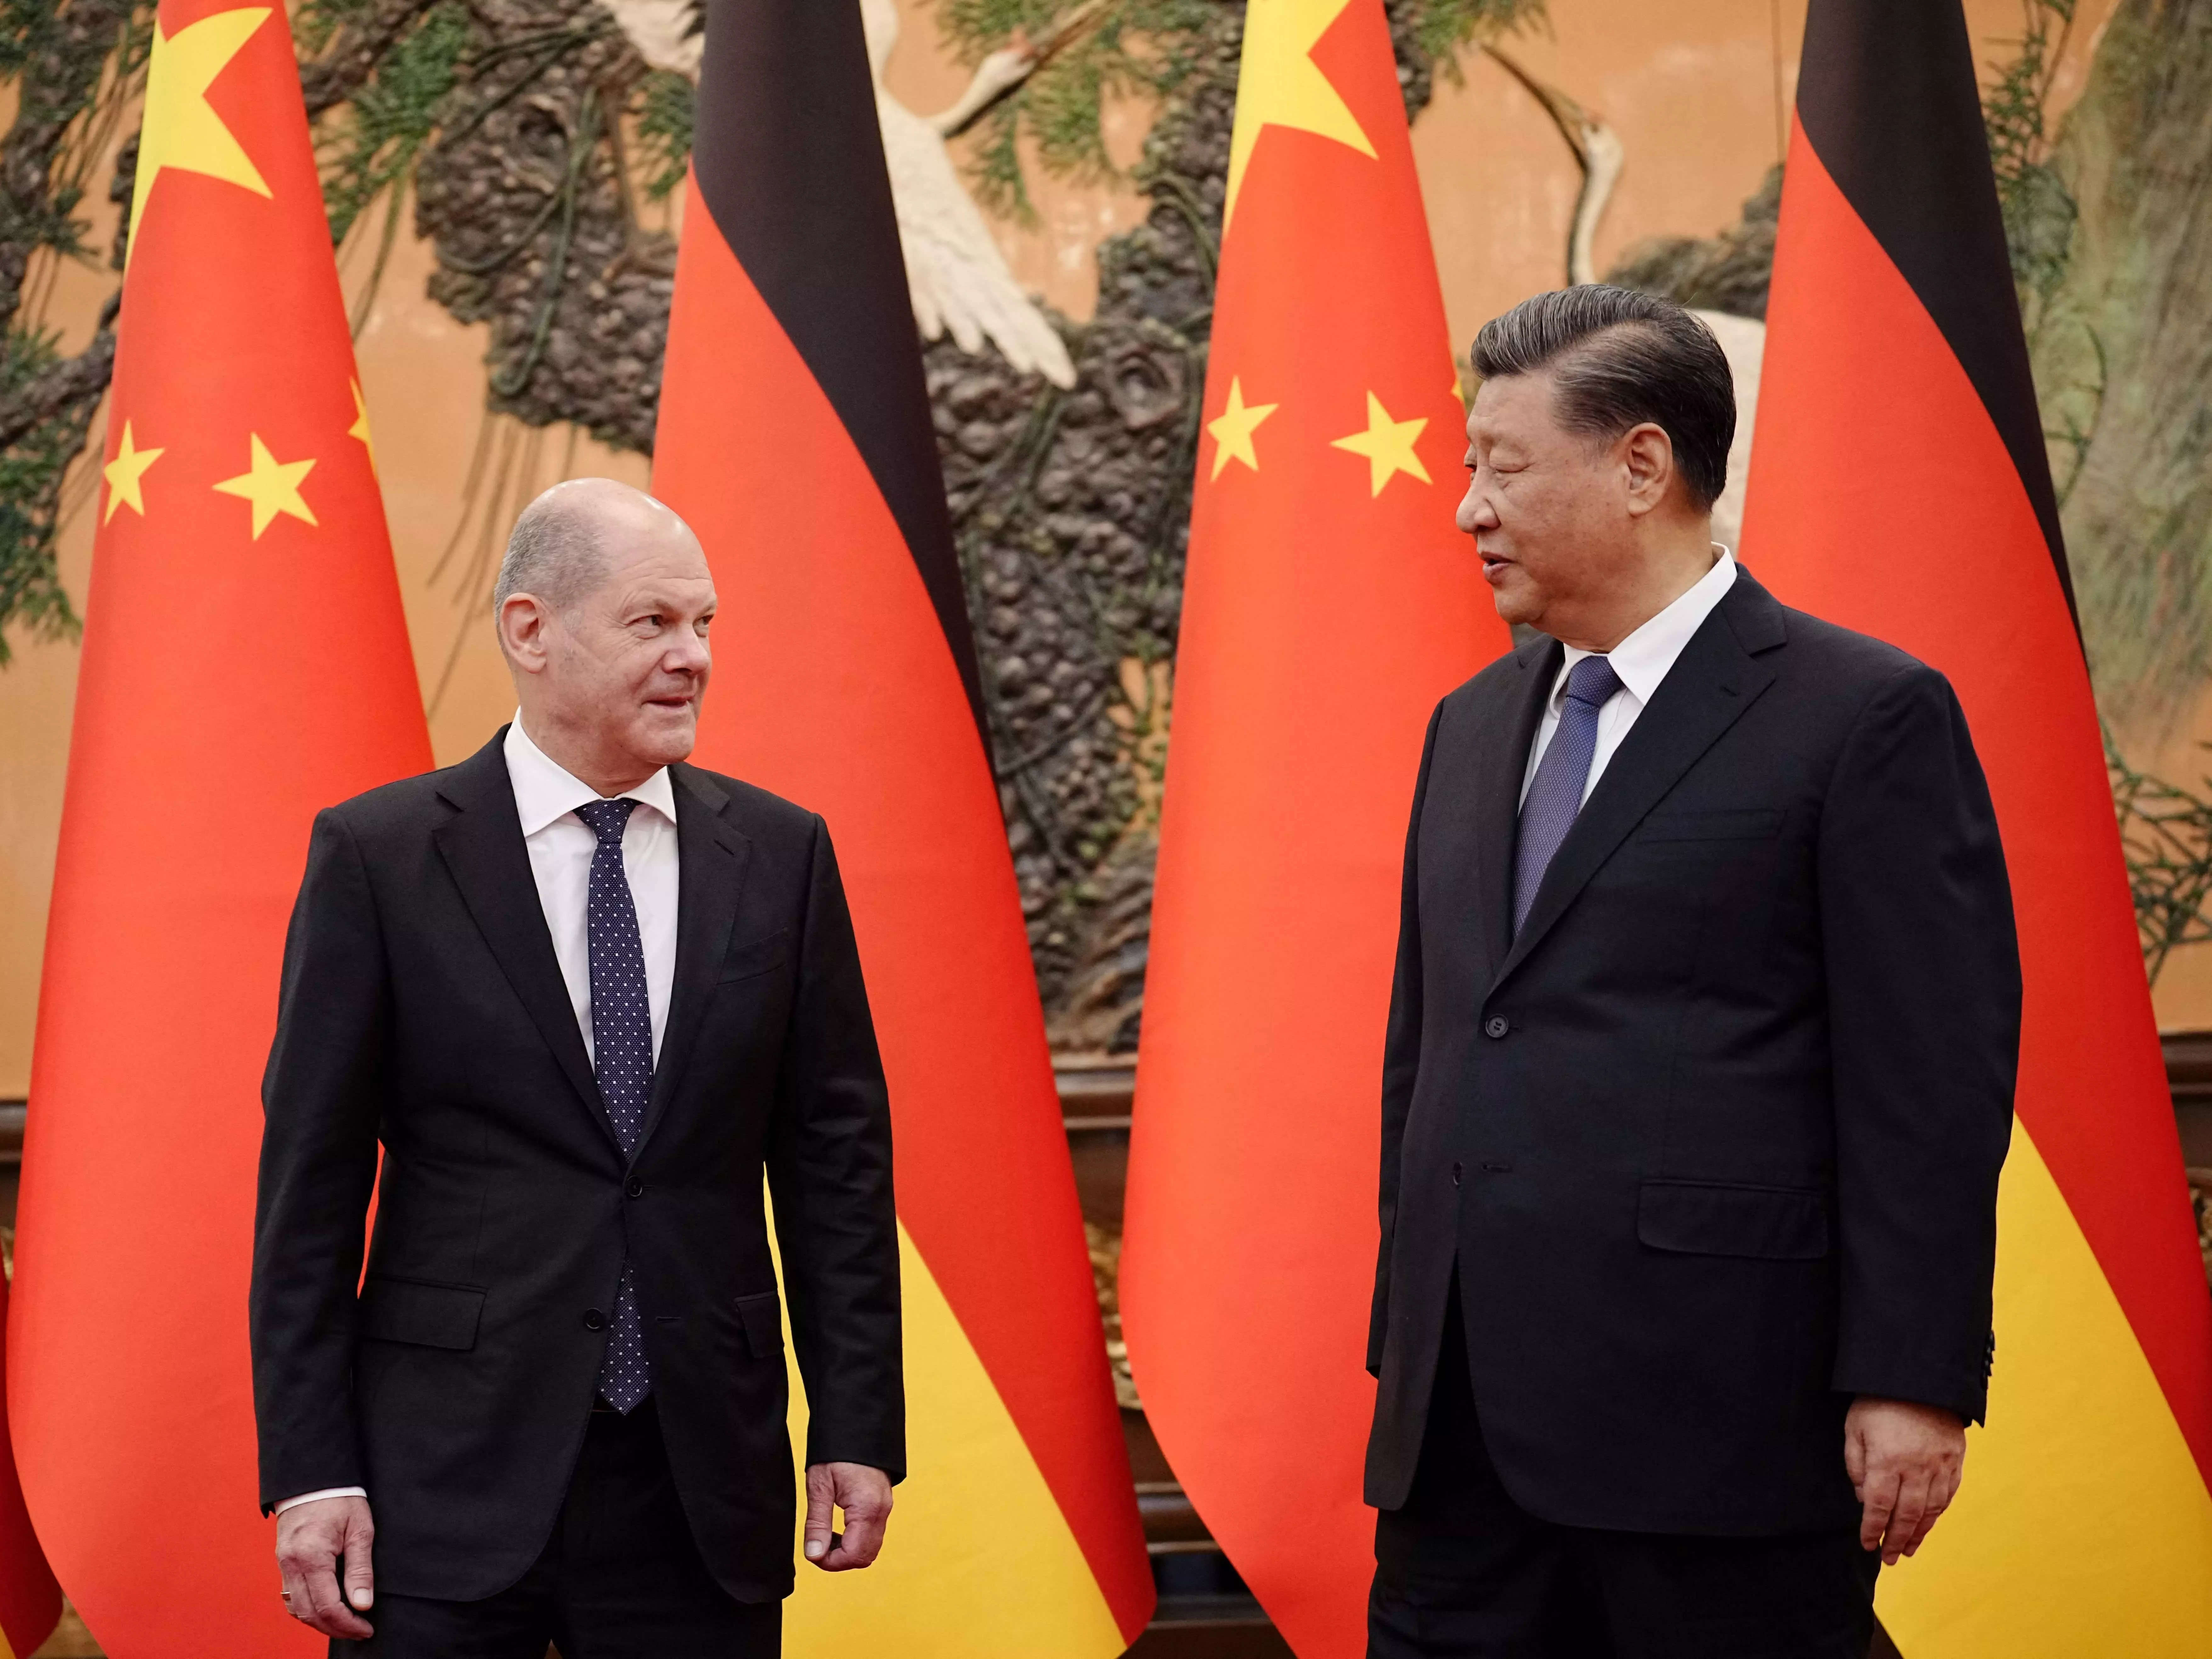 Германия, обожженная чрезмерной зависимостью от российского газа, теперь обещает покончить с зависимостью от торговли с Китаем.